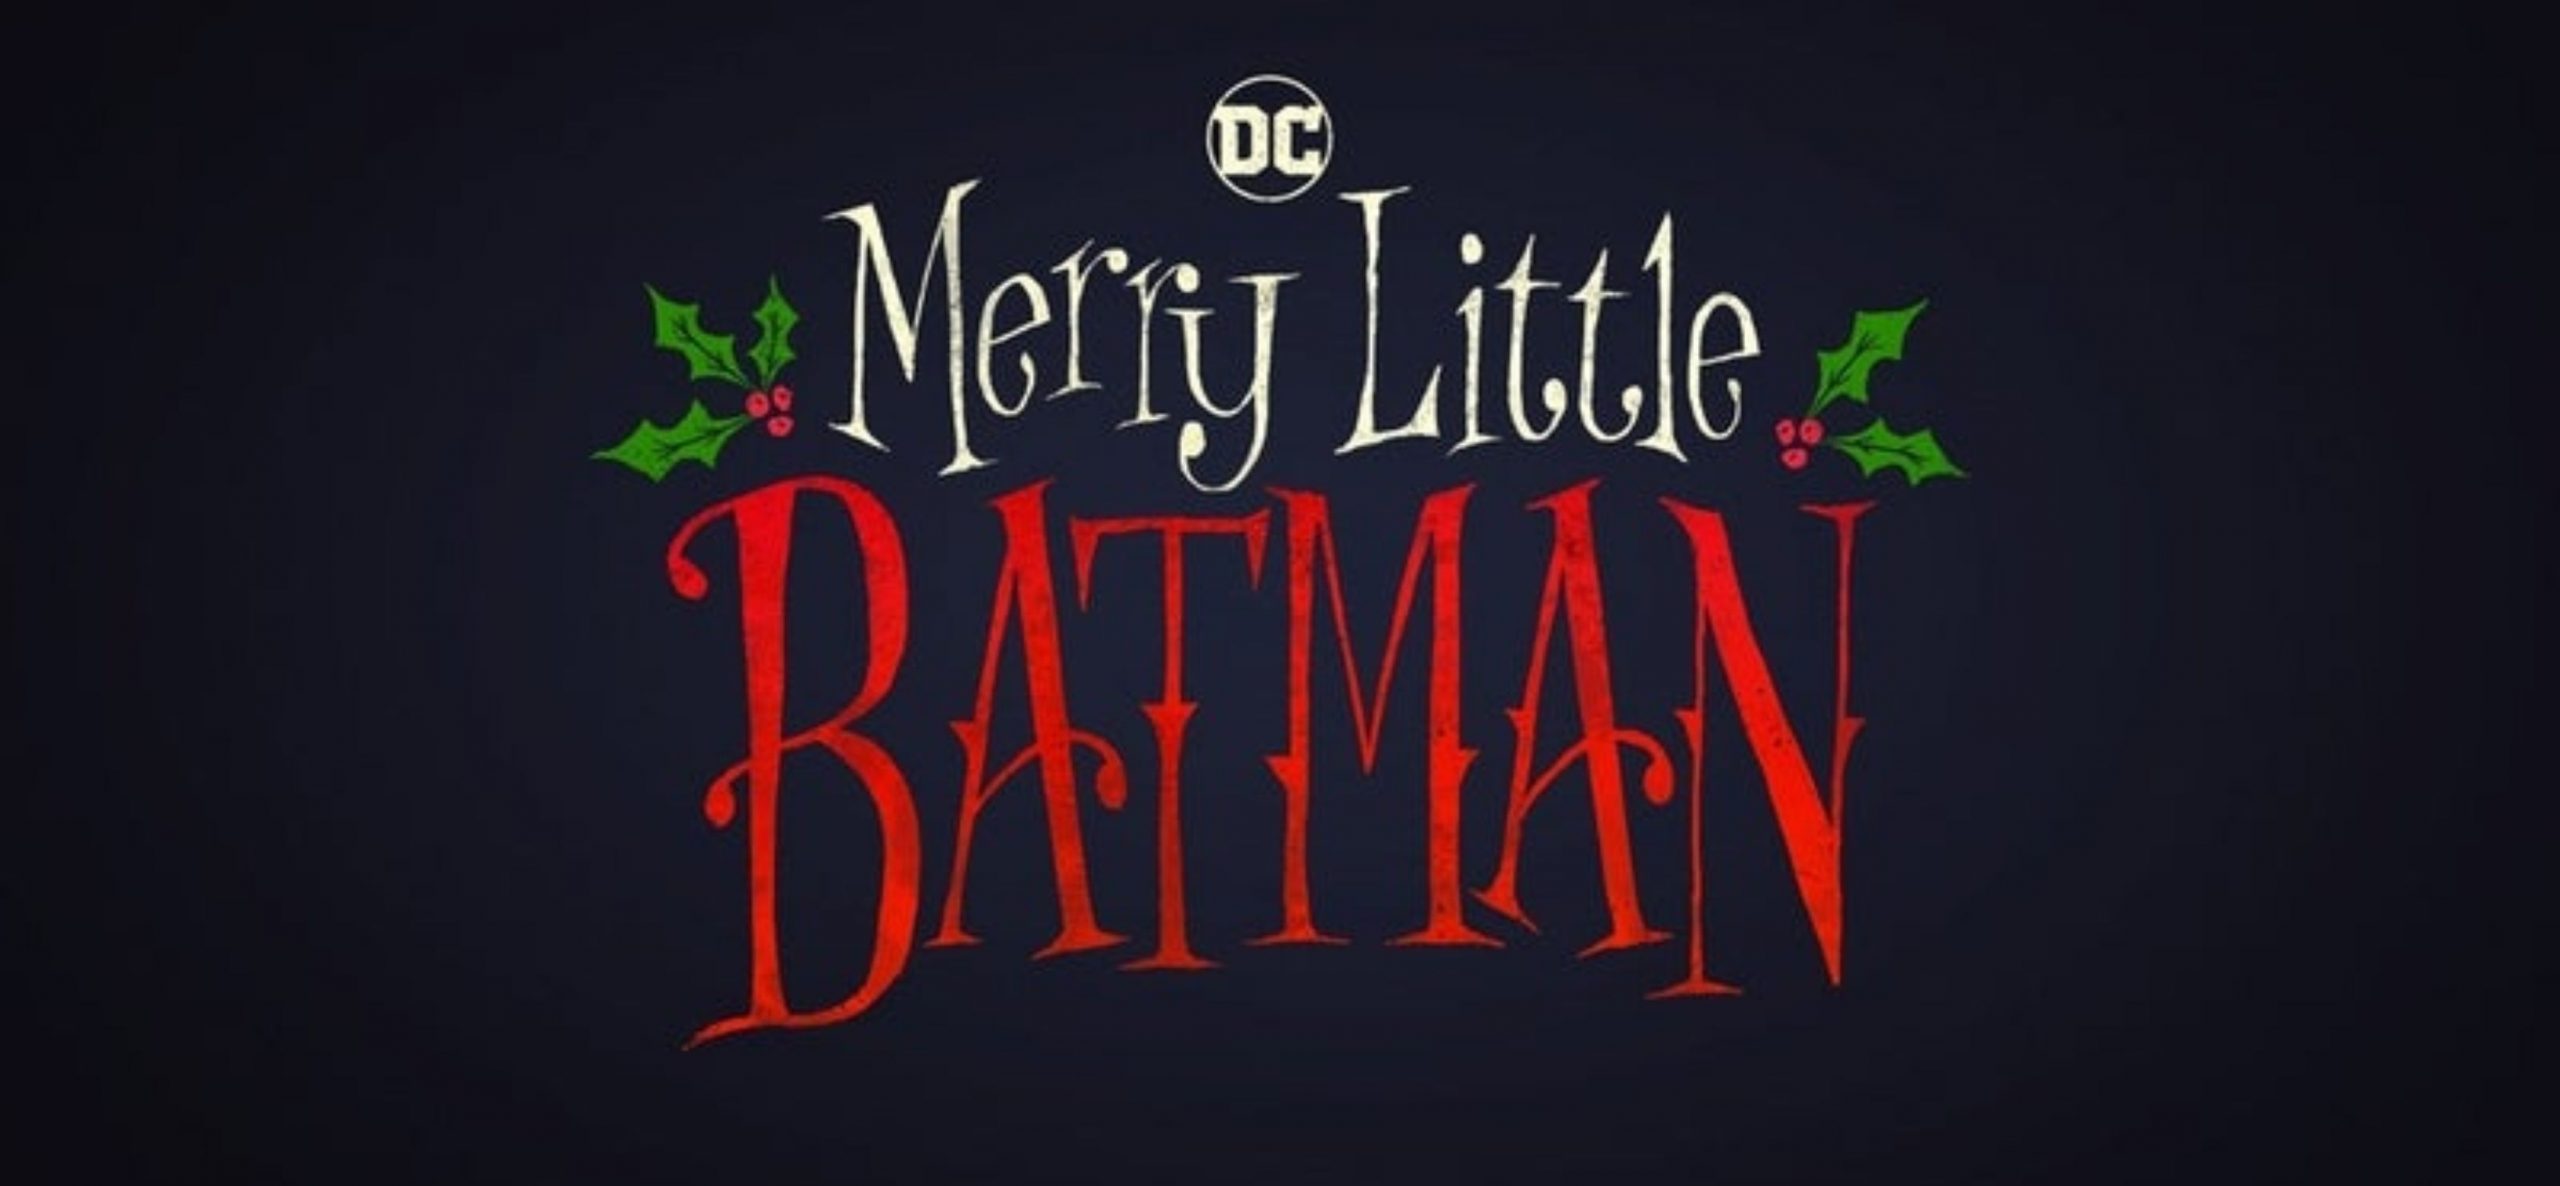 merry-little-batman-8997069